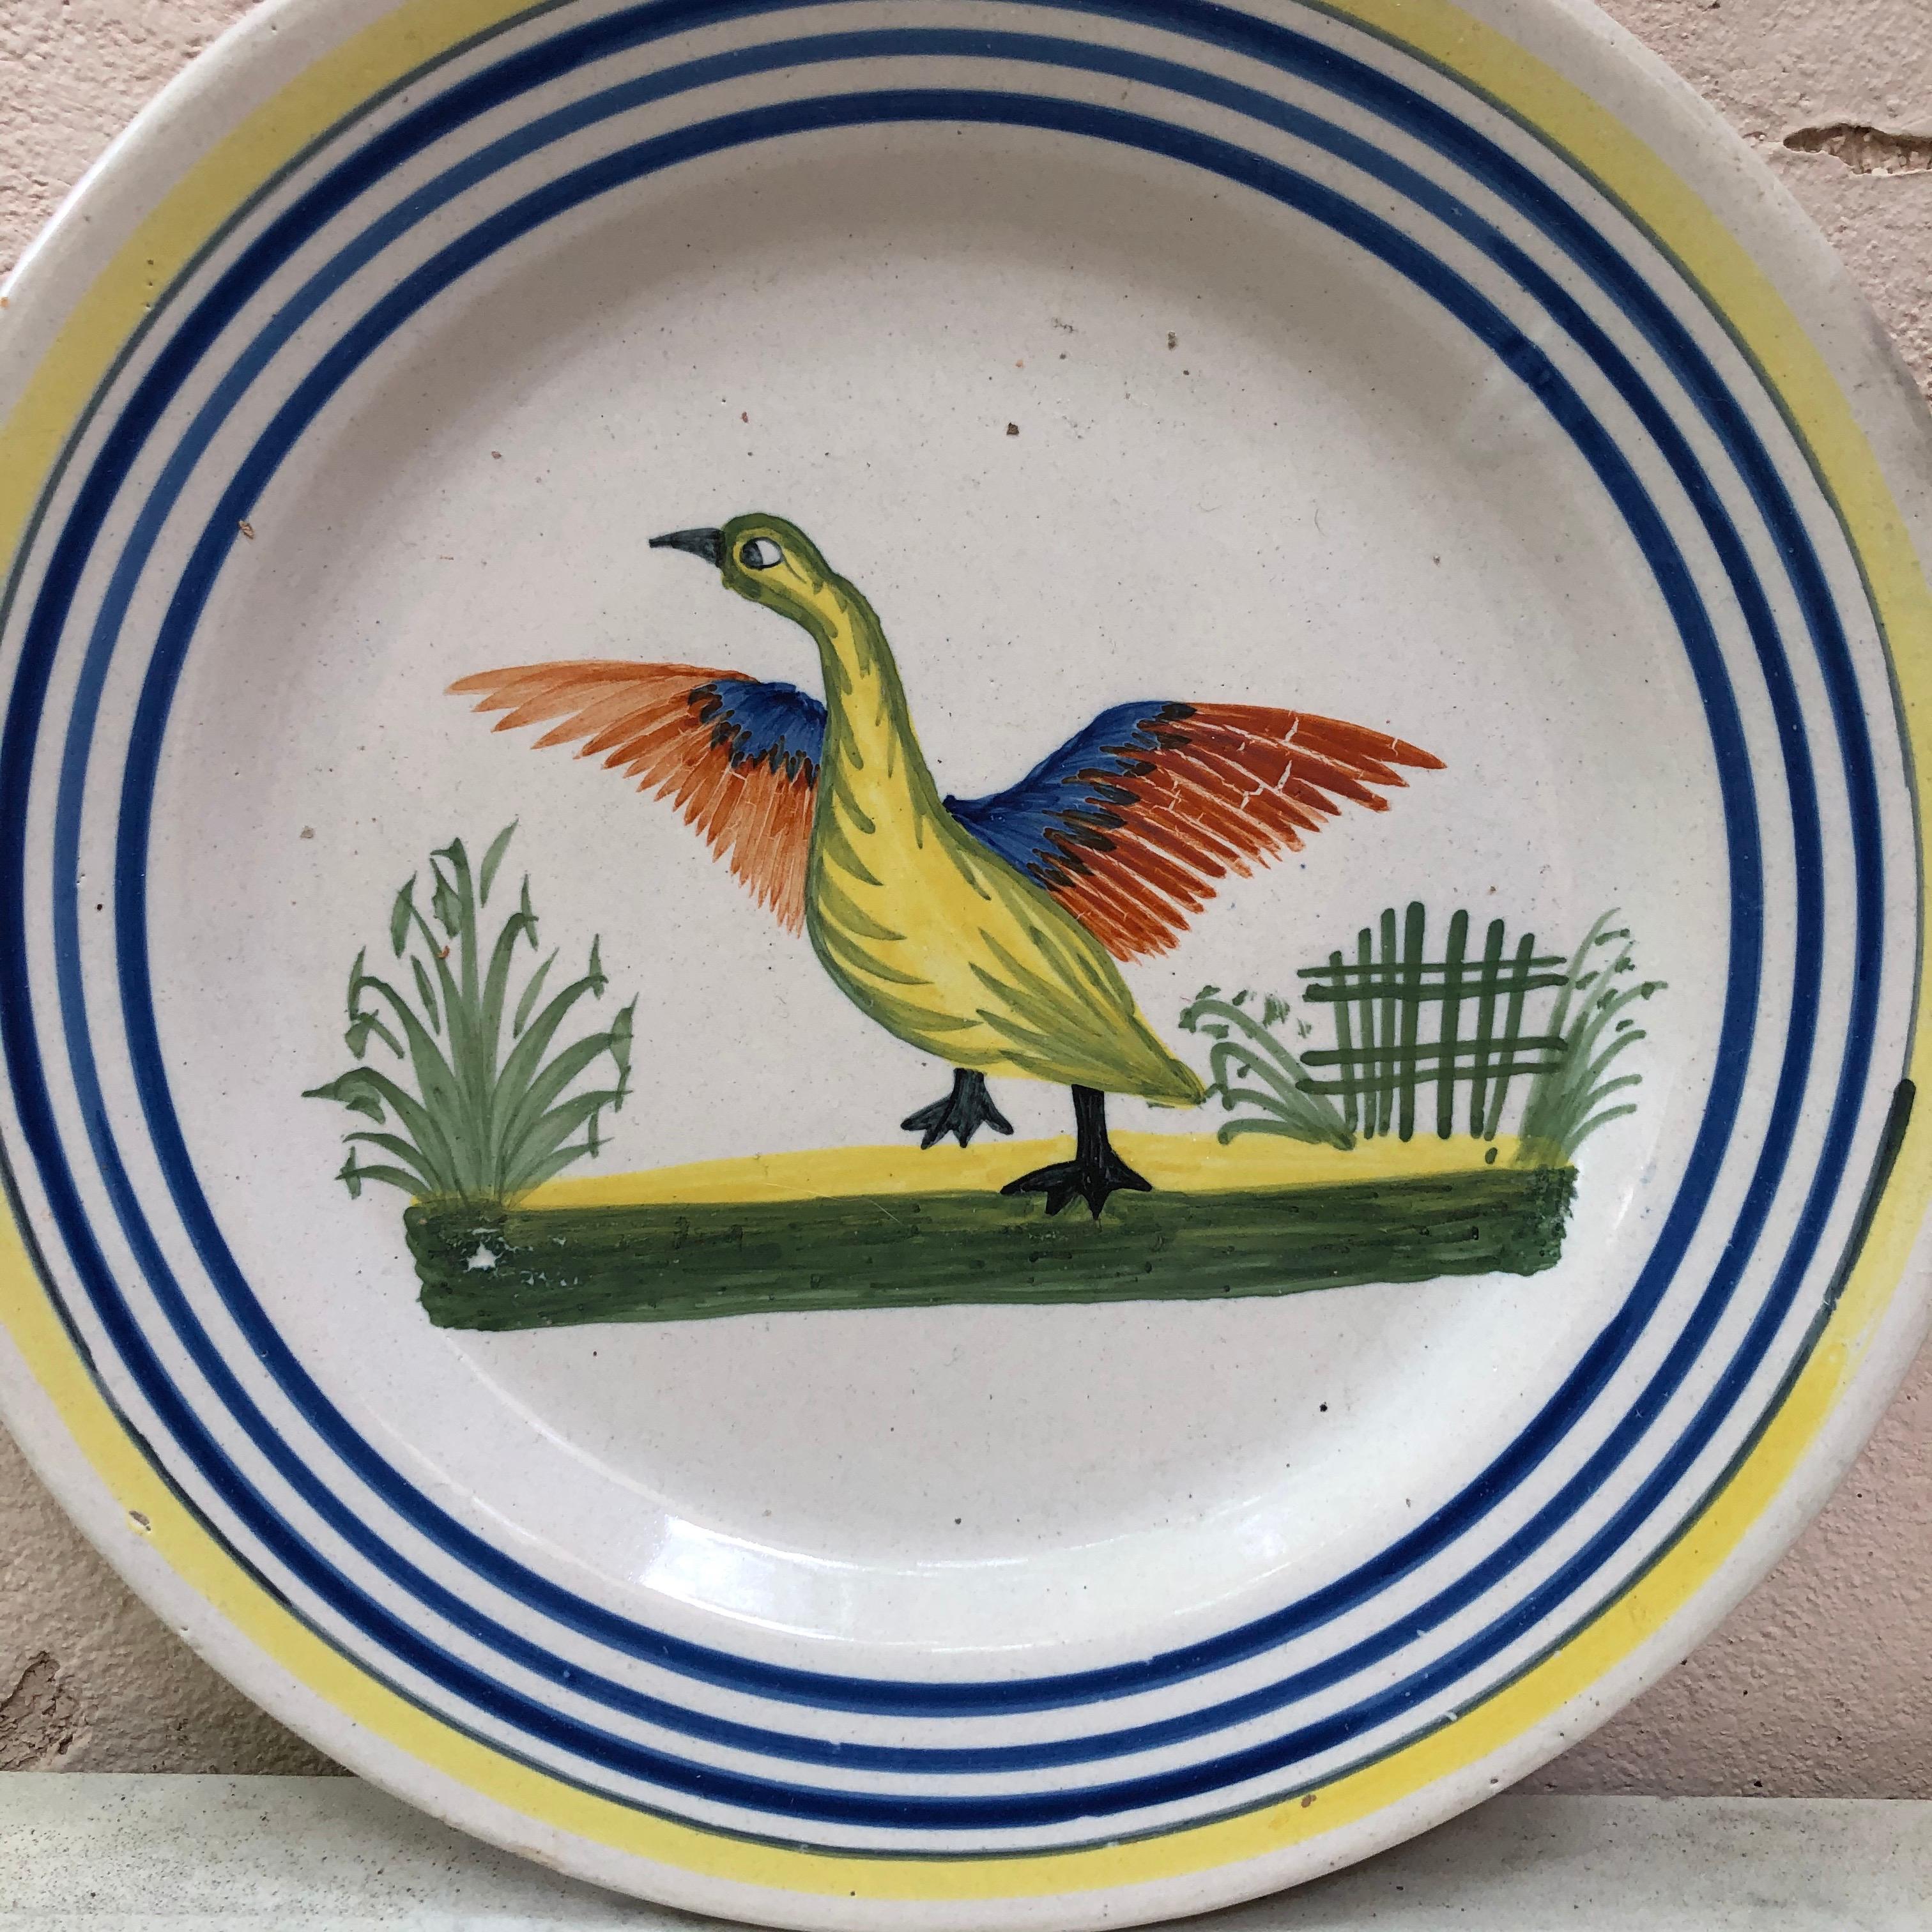 Une grande assiette en faïence française avec un oiseau signée Henriot Quimper, vers 1950.
Bordure jaune colorée et lignes bleues.
Mesure : 9,5